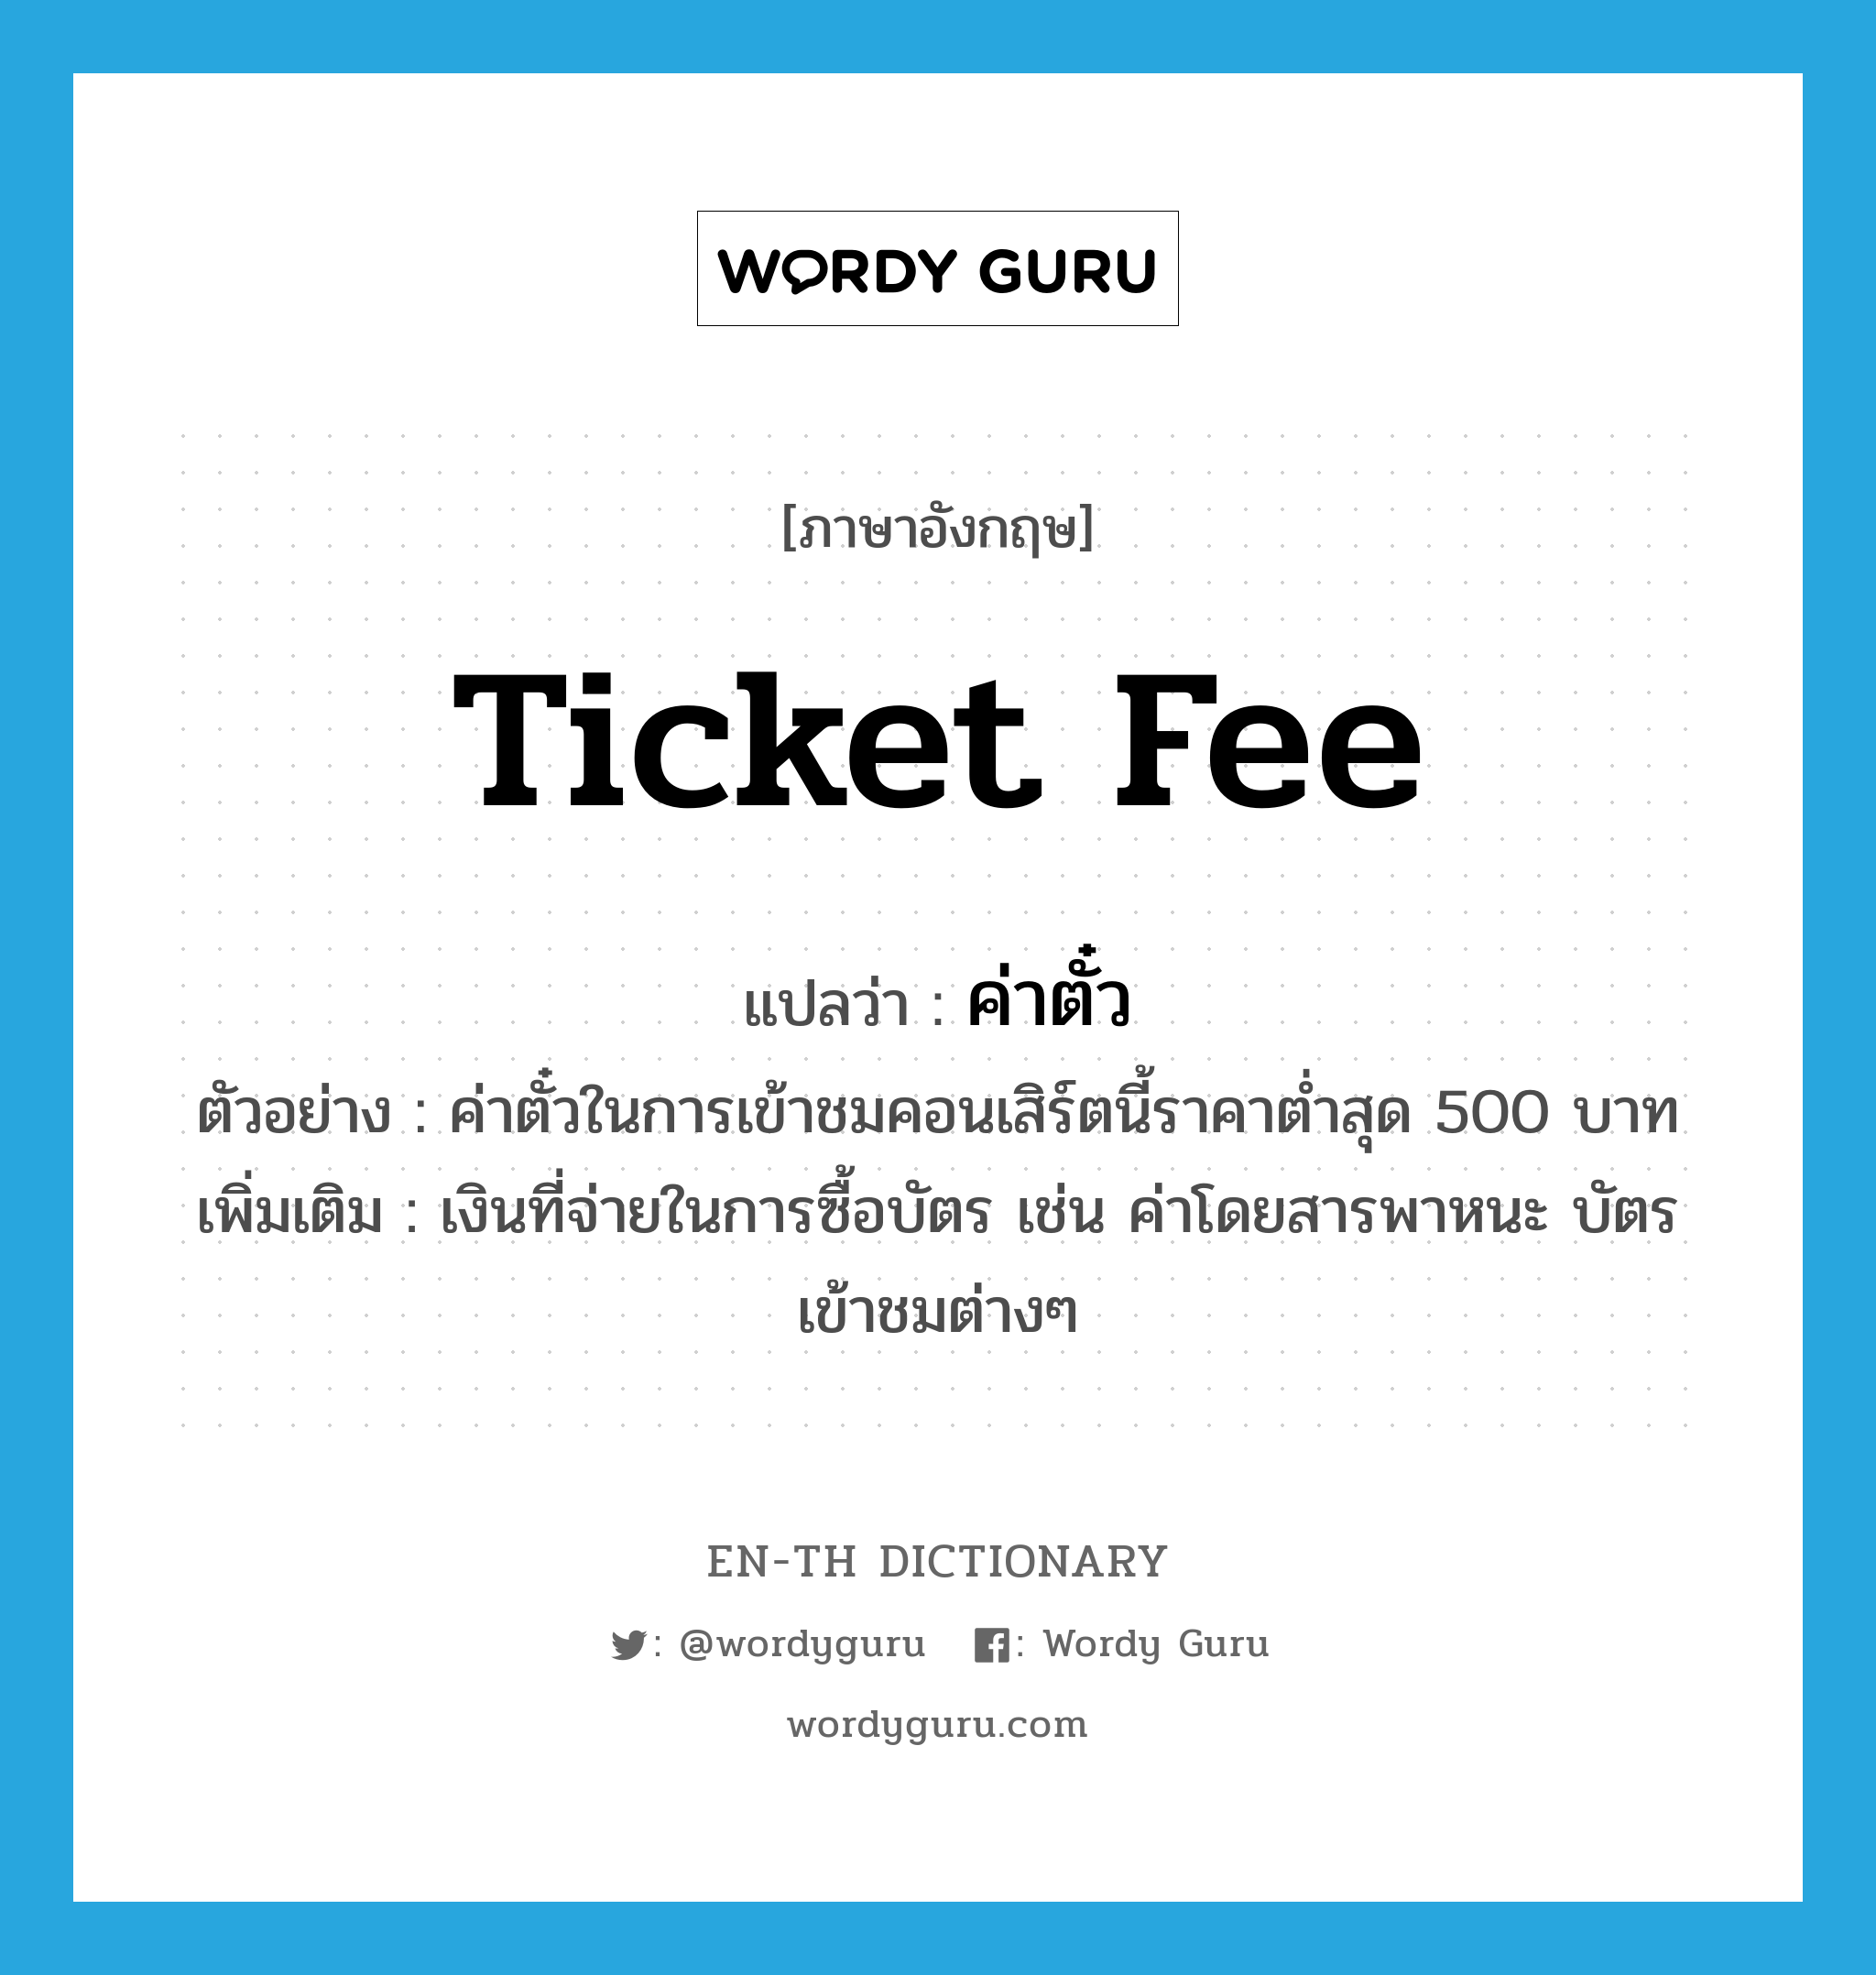 ticket fee แปลว่า?, คำศัพท์ภาษาอังกฤษ ticket fee แปลว่า ค่าตั๋ว ประเภท N ตัวอย่าง ค่าตั๋วในการเข้าชมคอนเสิร์ตนี้ราคาต่ำสุด 500 บาท เพิ่มเติม เงินที่จ่ายในการซื้อบัตร เช่น ค่าโดยสารพาหนะ บัตรเข้าชมต่างๆ หมวด N